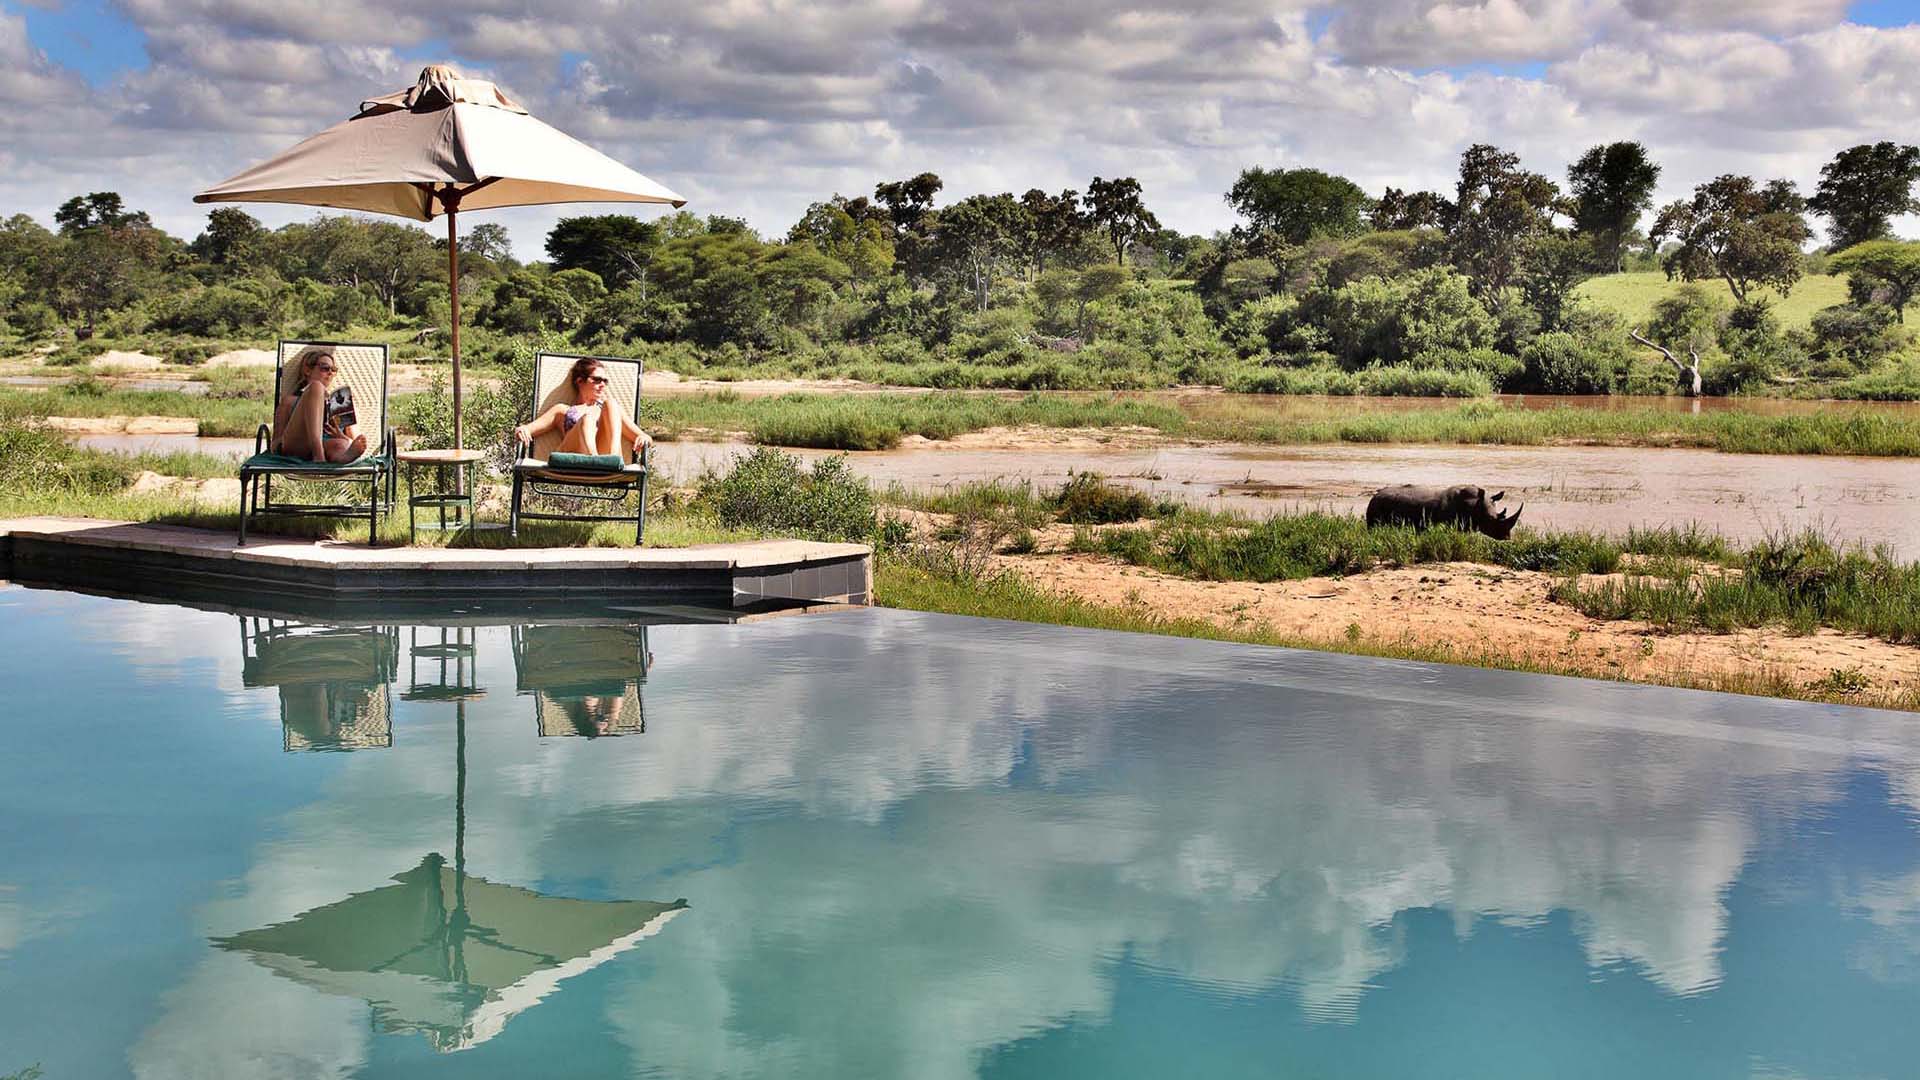 2 ragazze ai bordi della piscina a Mala Mala osservano un rinoceronte che passeggia lungo il fiume